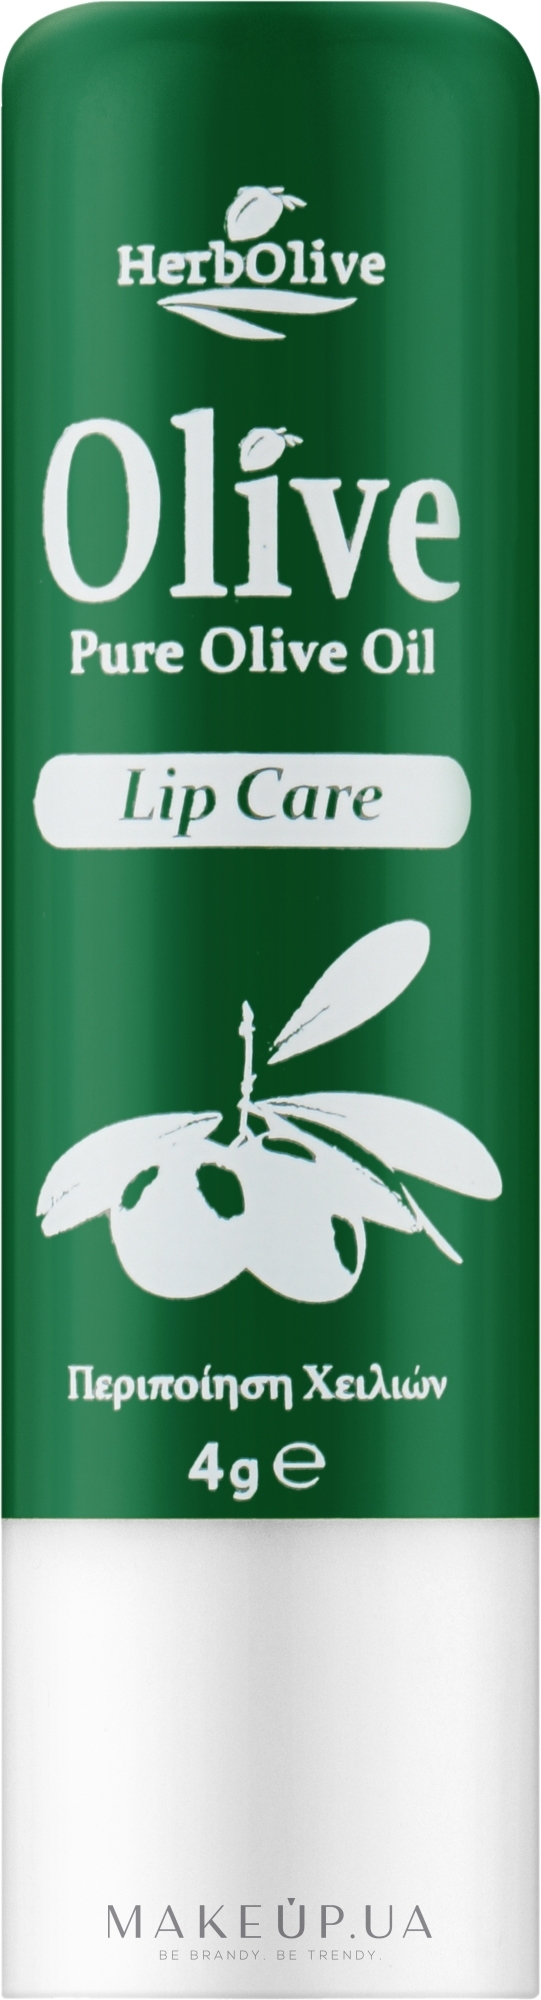 Бальзам для губ з оливковою олією - Madis HerbOlive Lip Care — фото 4.5g